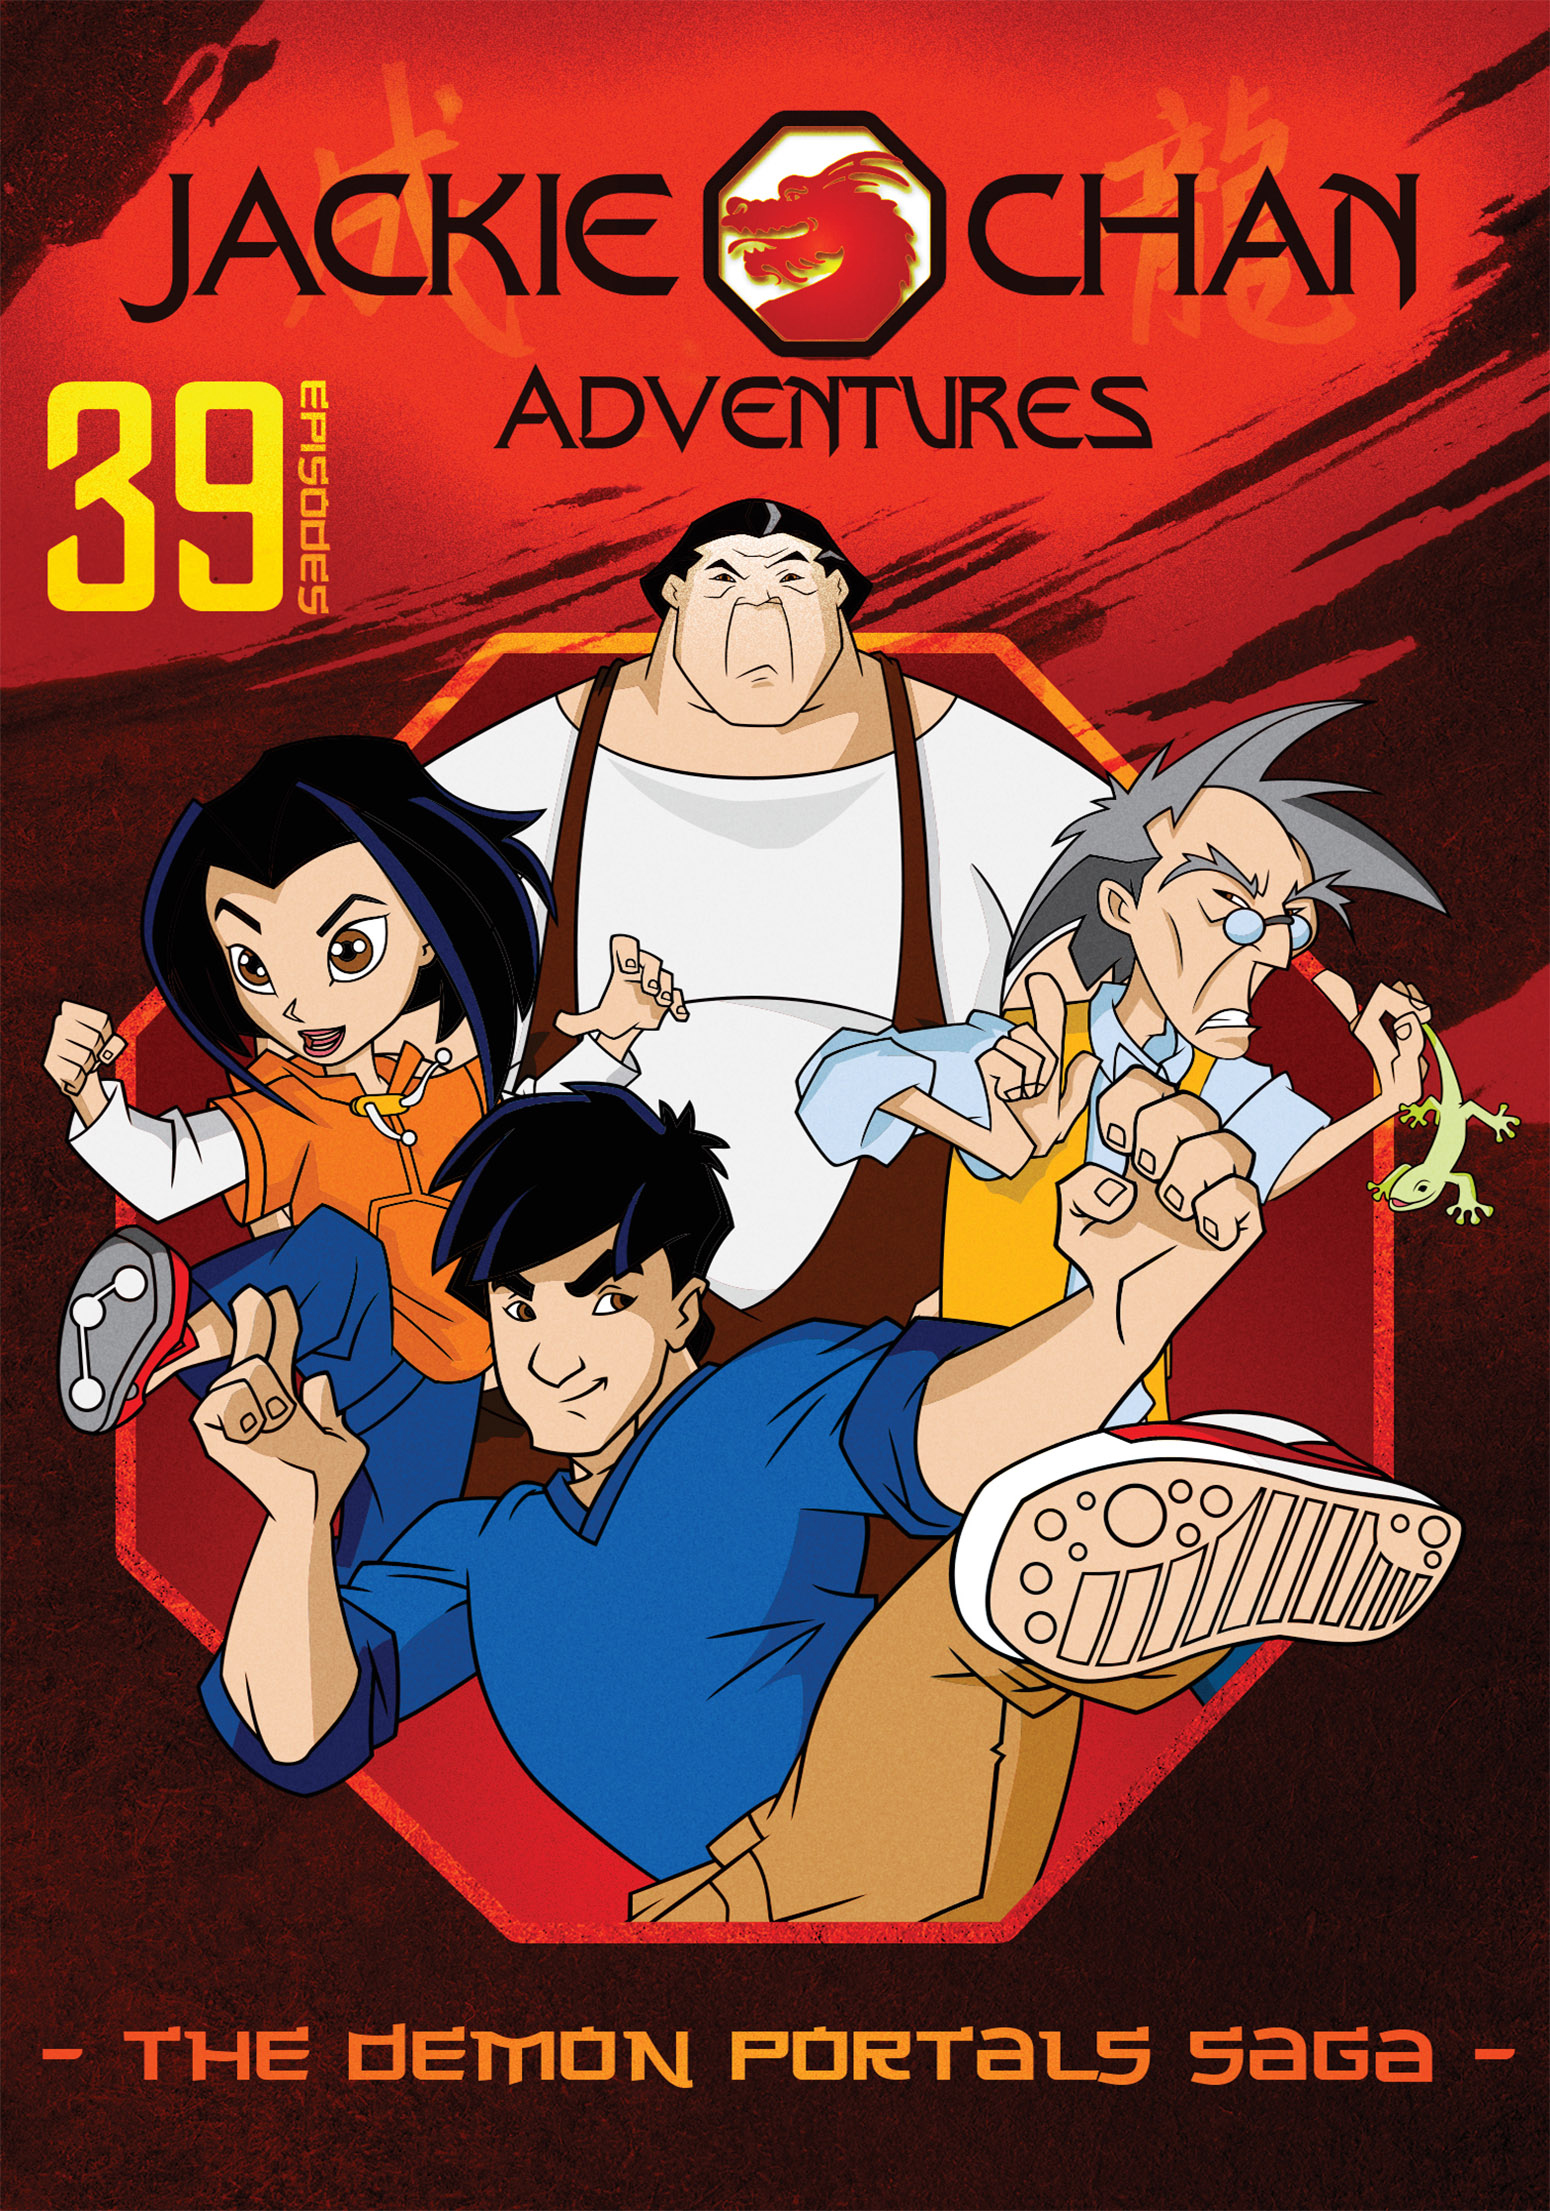  Jackie Chan Adventures The Demon Portals Saga 3 Discs DVD Best Buy